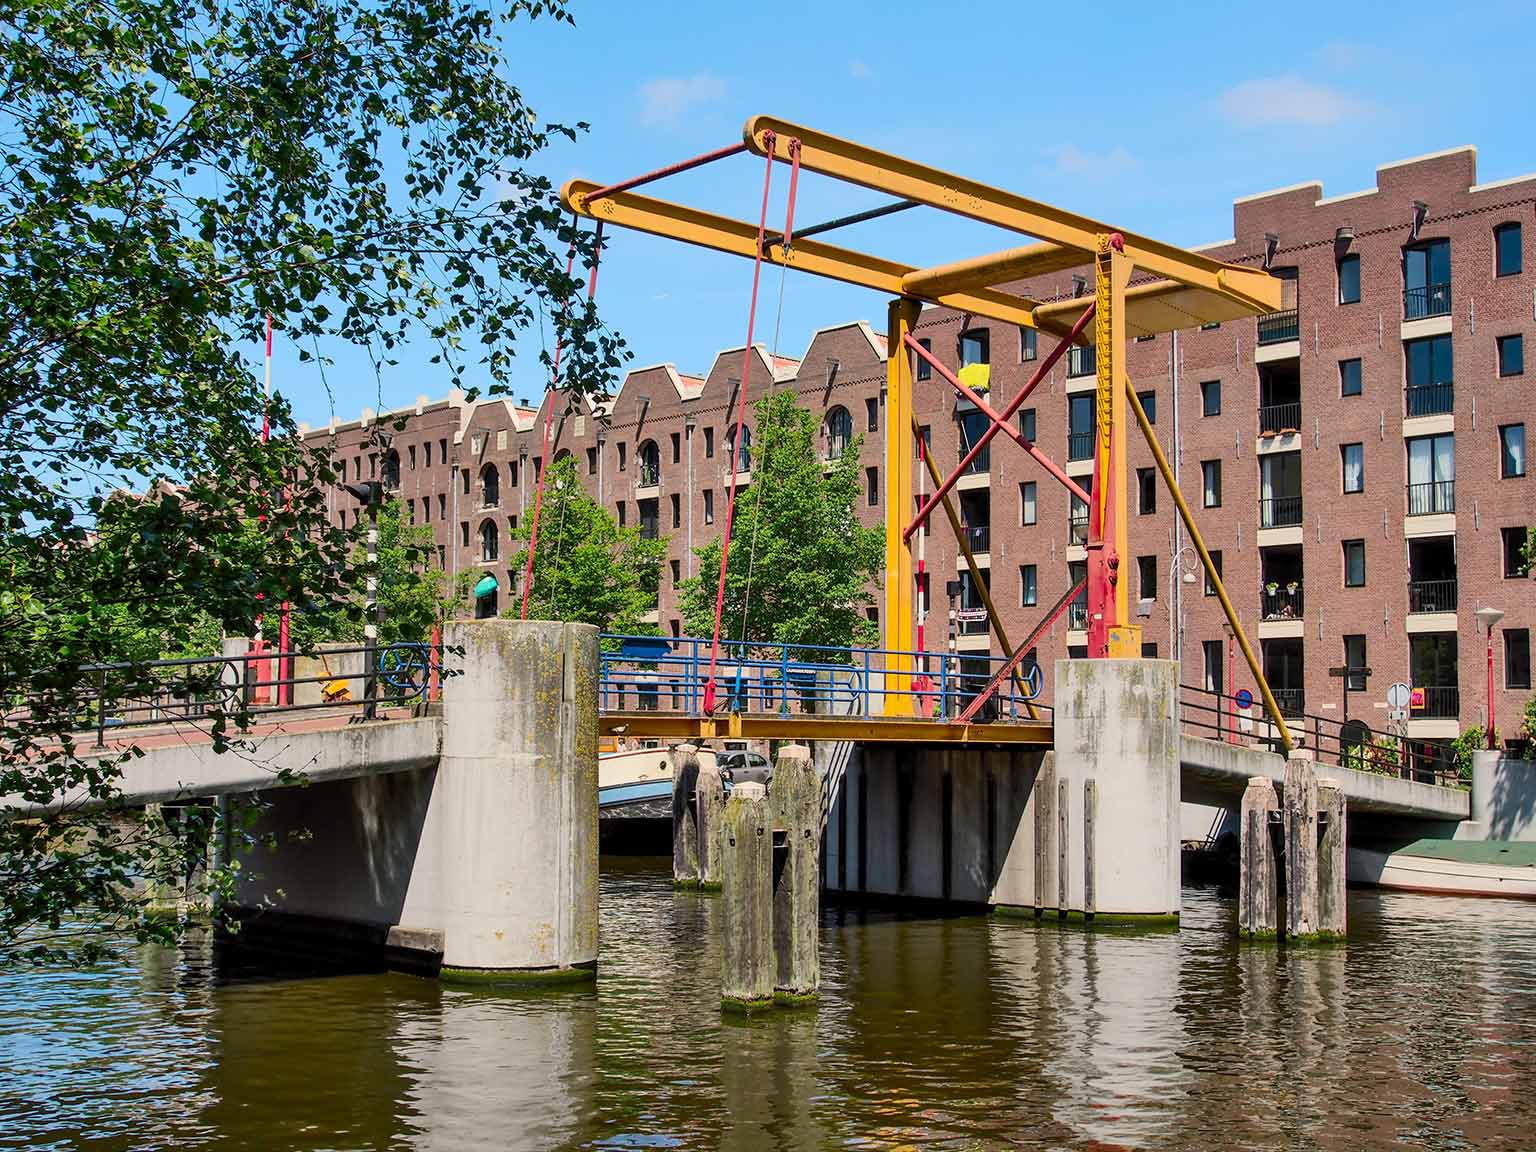 Nijlpaardenbrug (Hippo bridge) across the Entrepotdok, Amsterdam